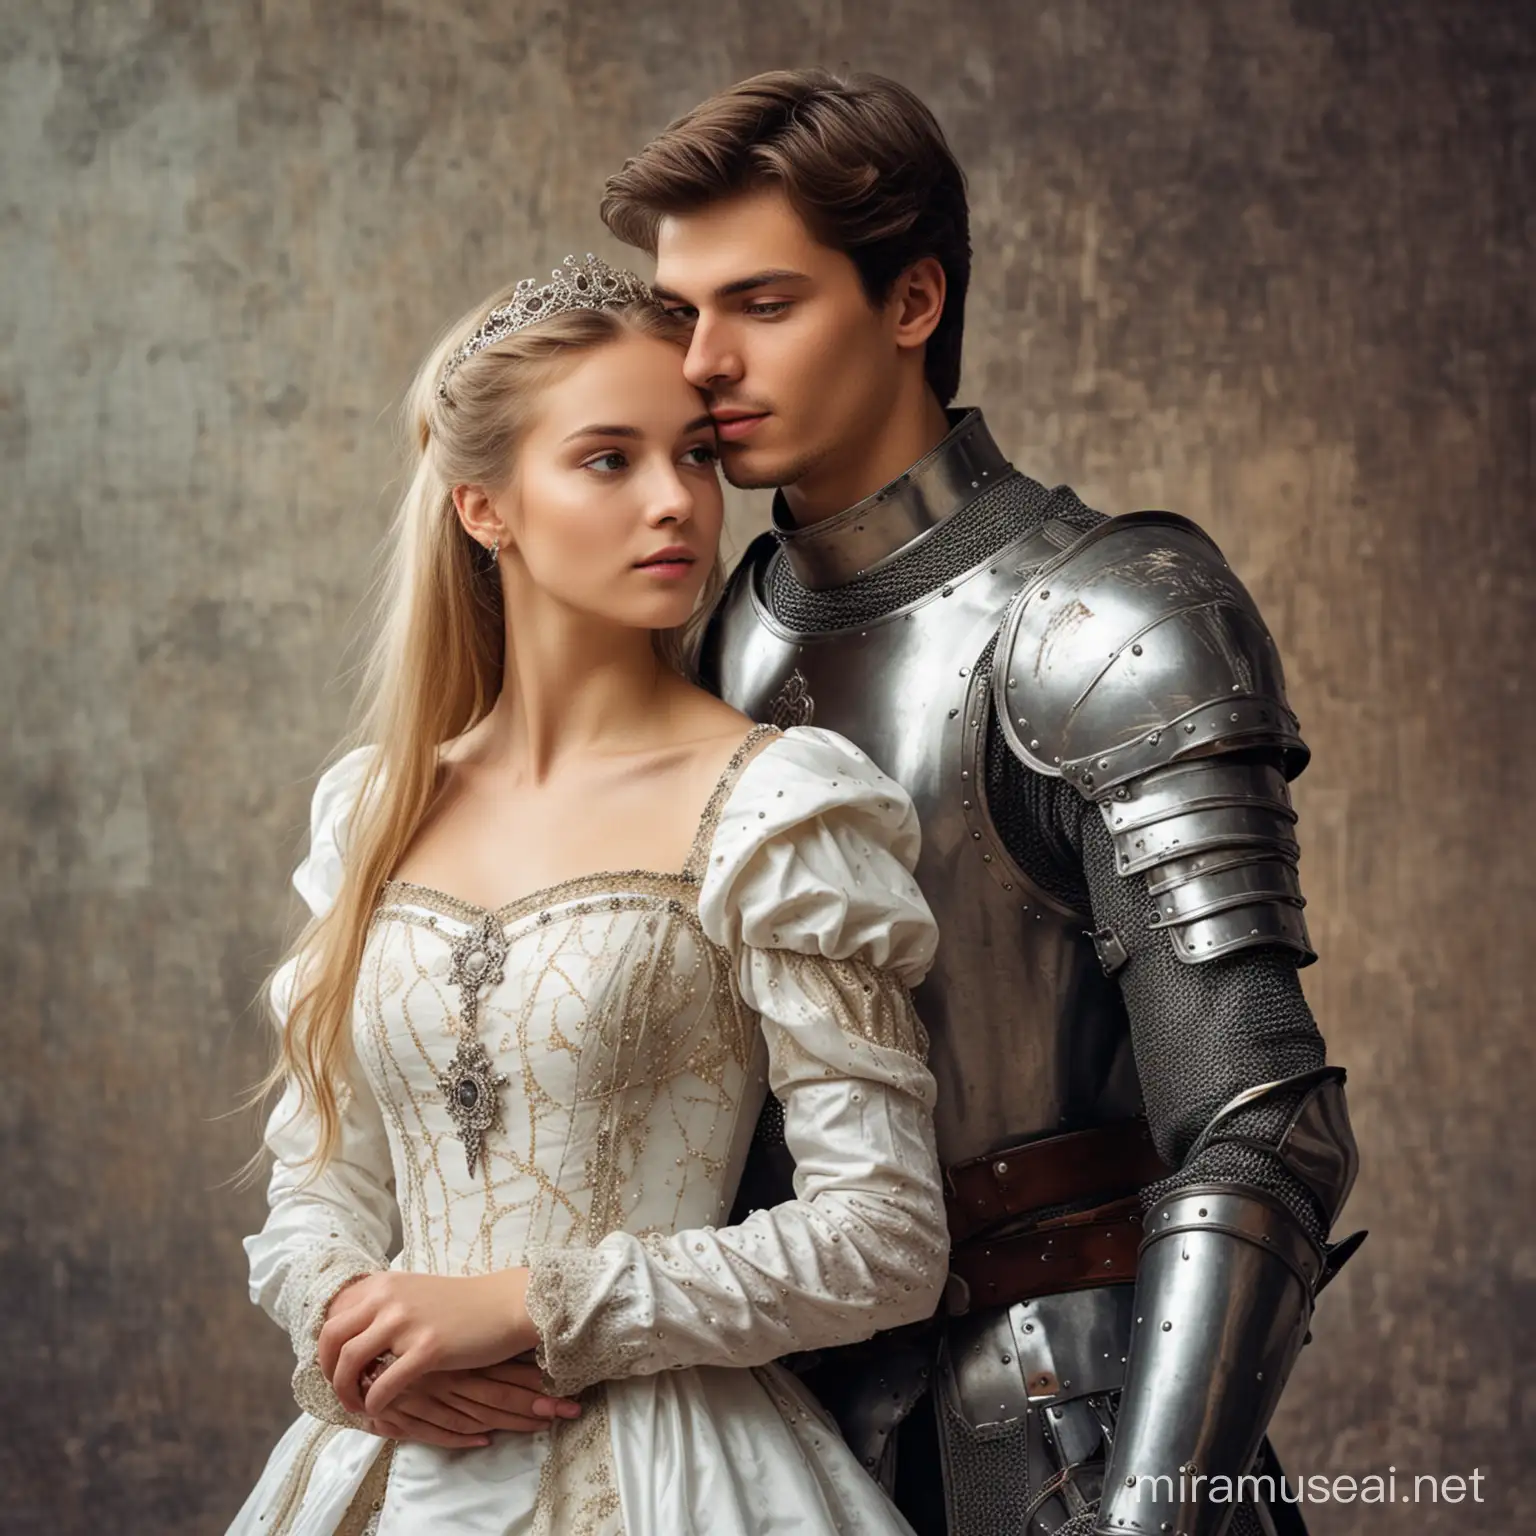 парень молодой двадцать лет и девушка в образах рыцаря и принцессы 